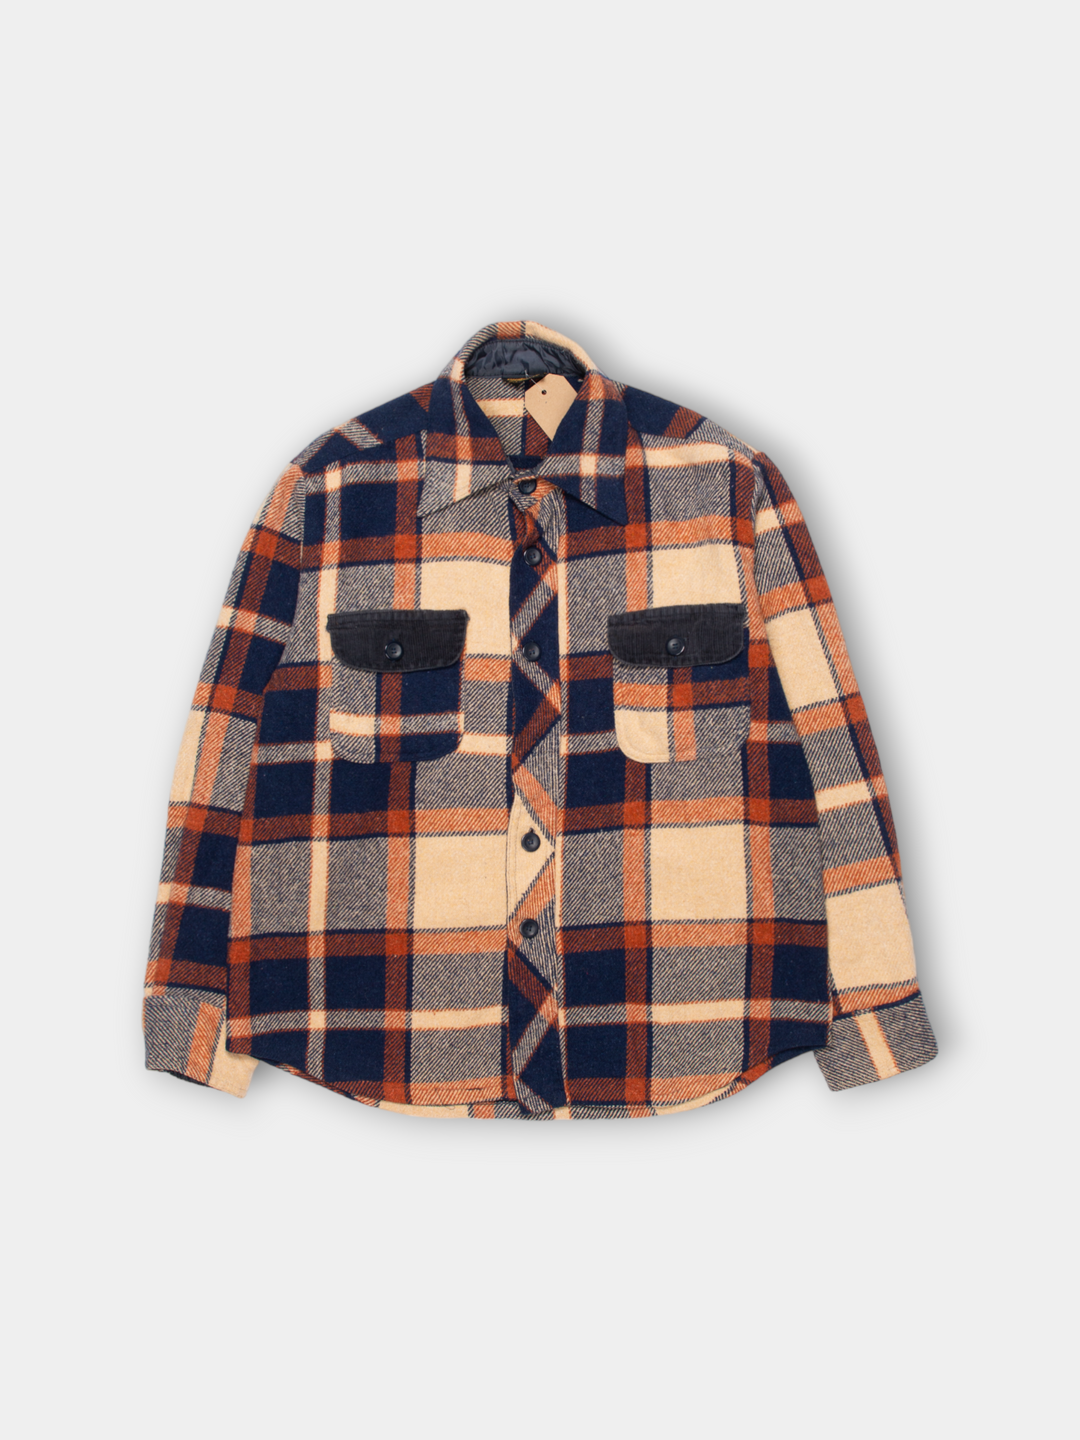 70s Sears Heavy Flannel Wool Shirt Jacket (L)